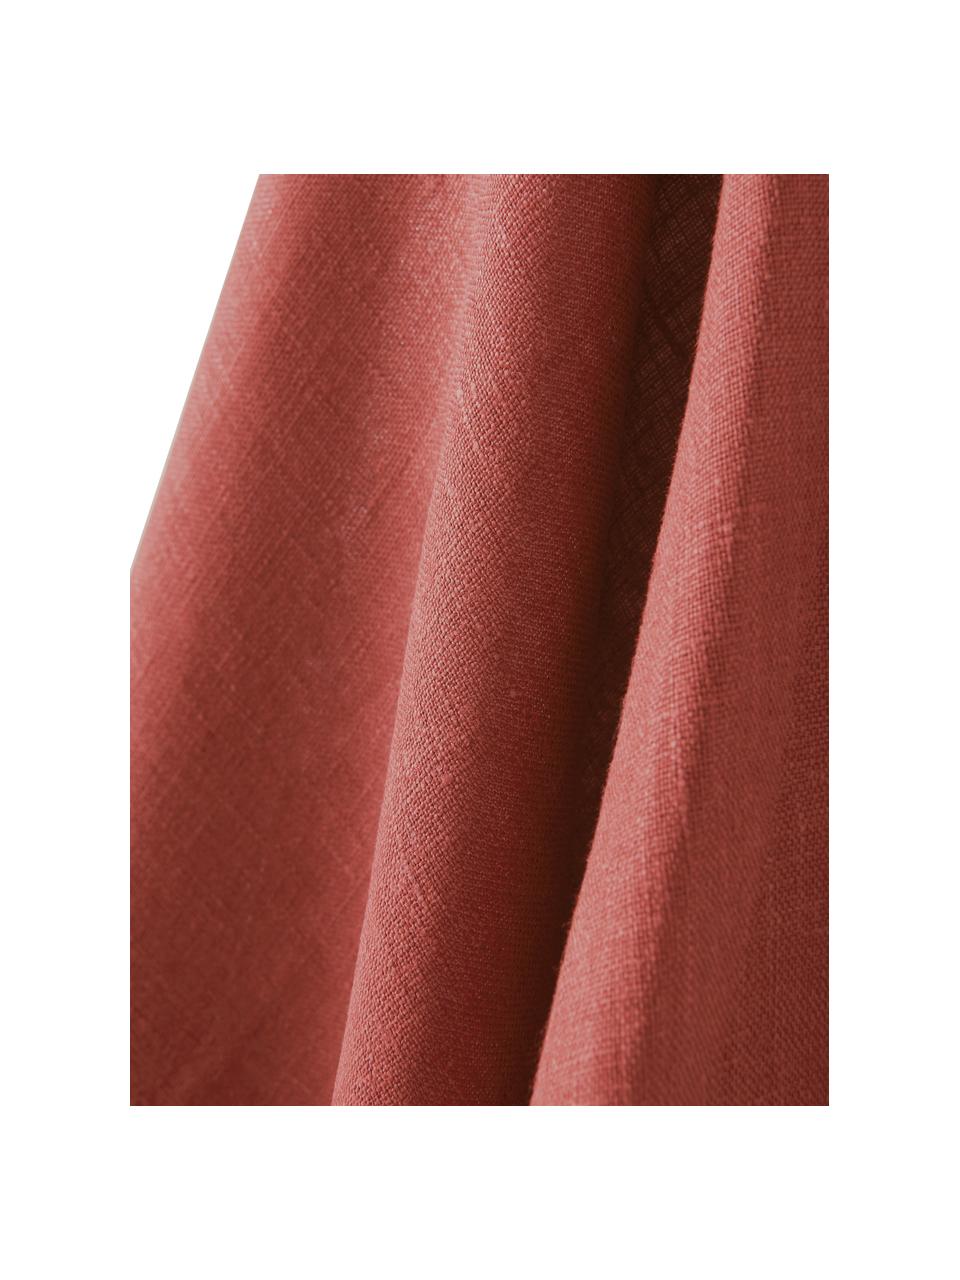 Leinen-Geschirrtuch Heddie in Rot, 100% Leinen, Rot, 50 x 70 cm